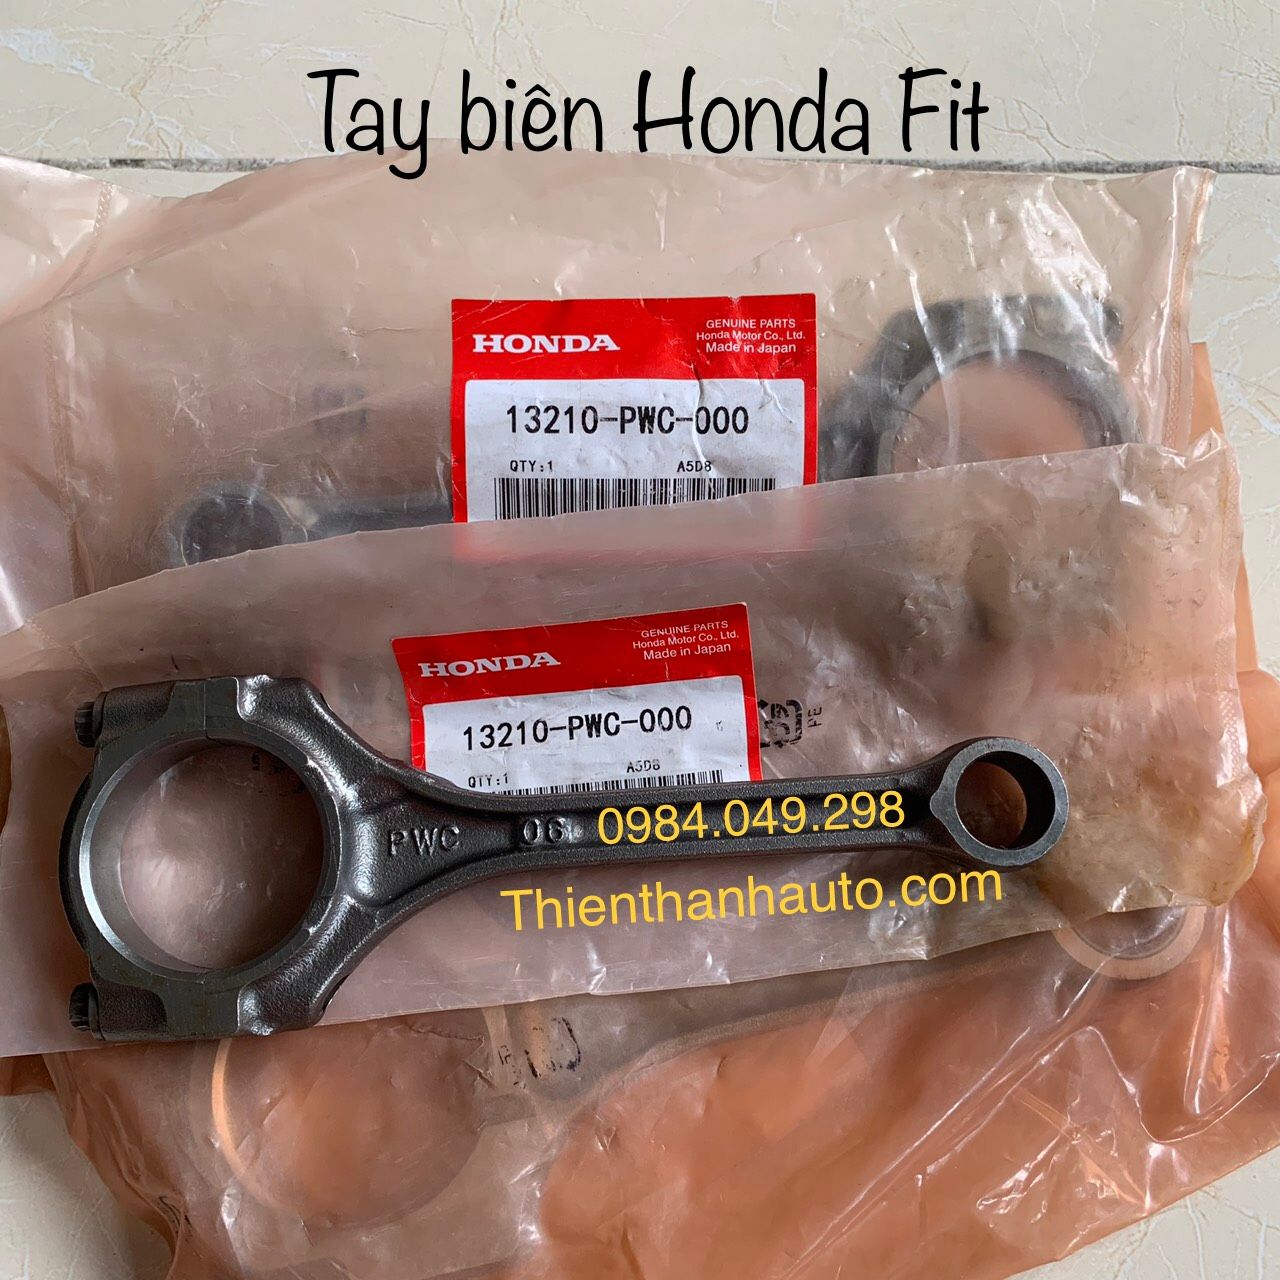 Tay biên - thanh truyền Honda Fit giá tốt nhất - 13210PWC000 - Phụ tùng ô tô Thiên Thanh